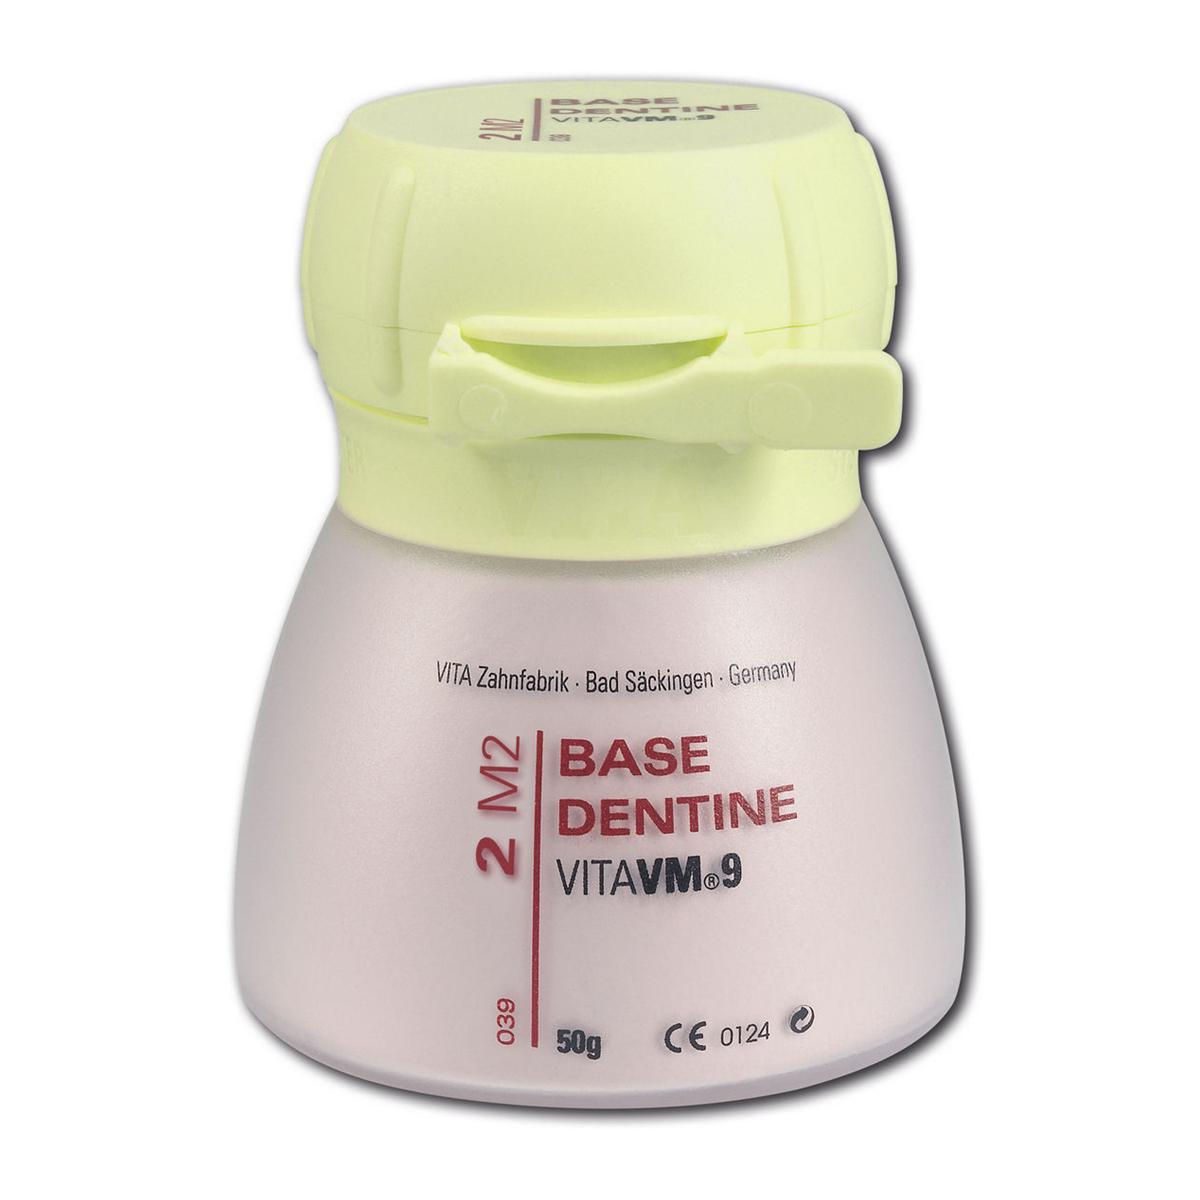 VitaVM 9 Base Dentin 50g 2L2.5